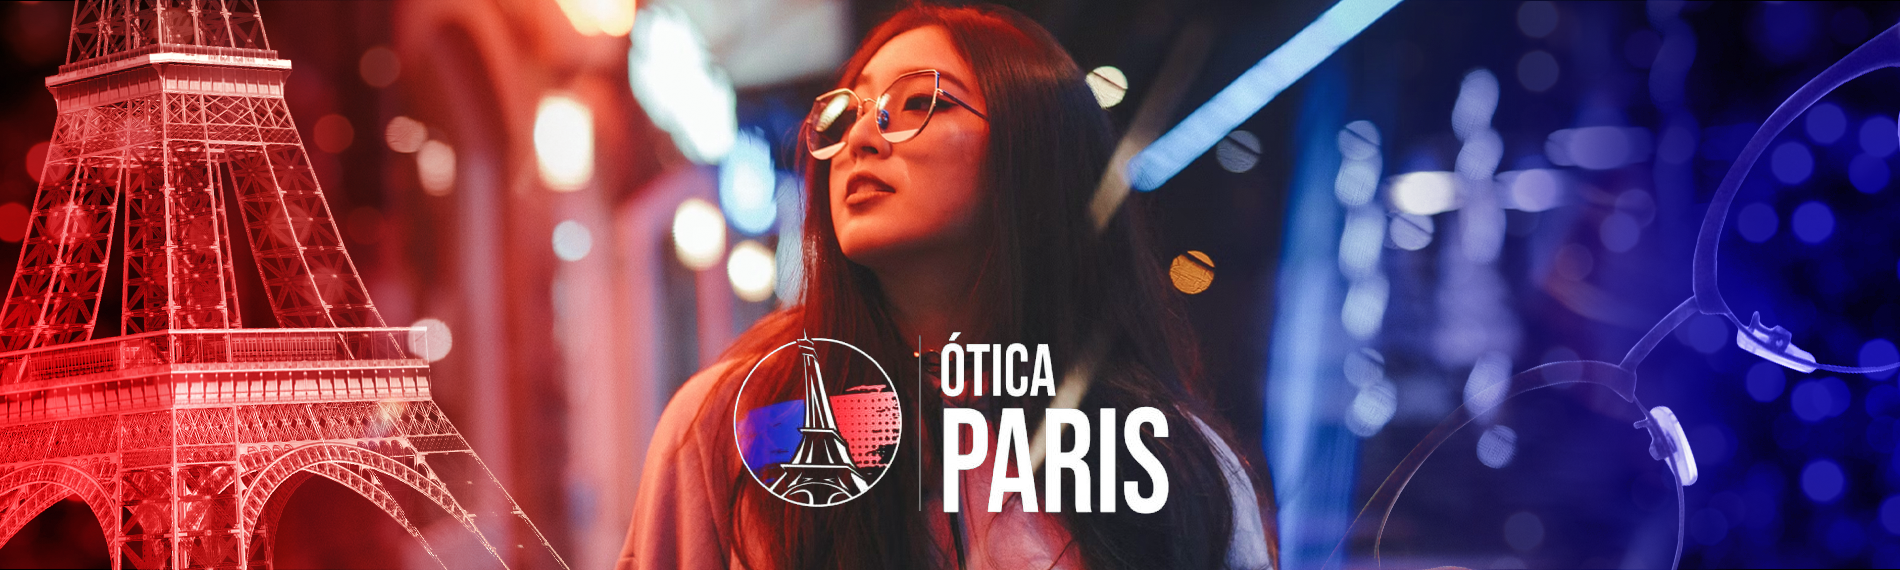 banner da empresa Ótica Paris Cidade Alta